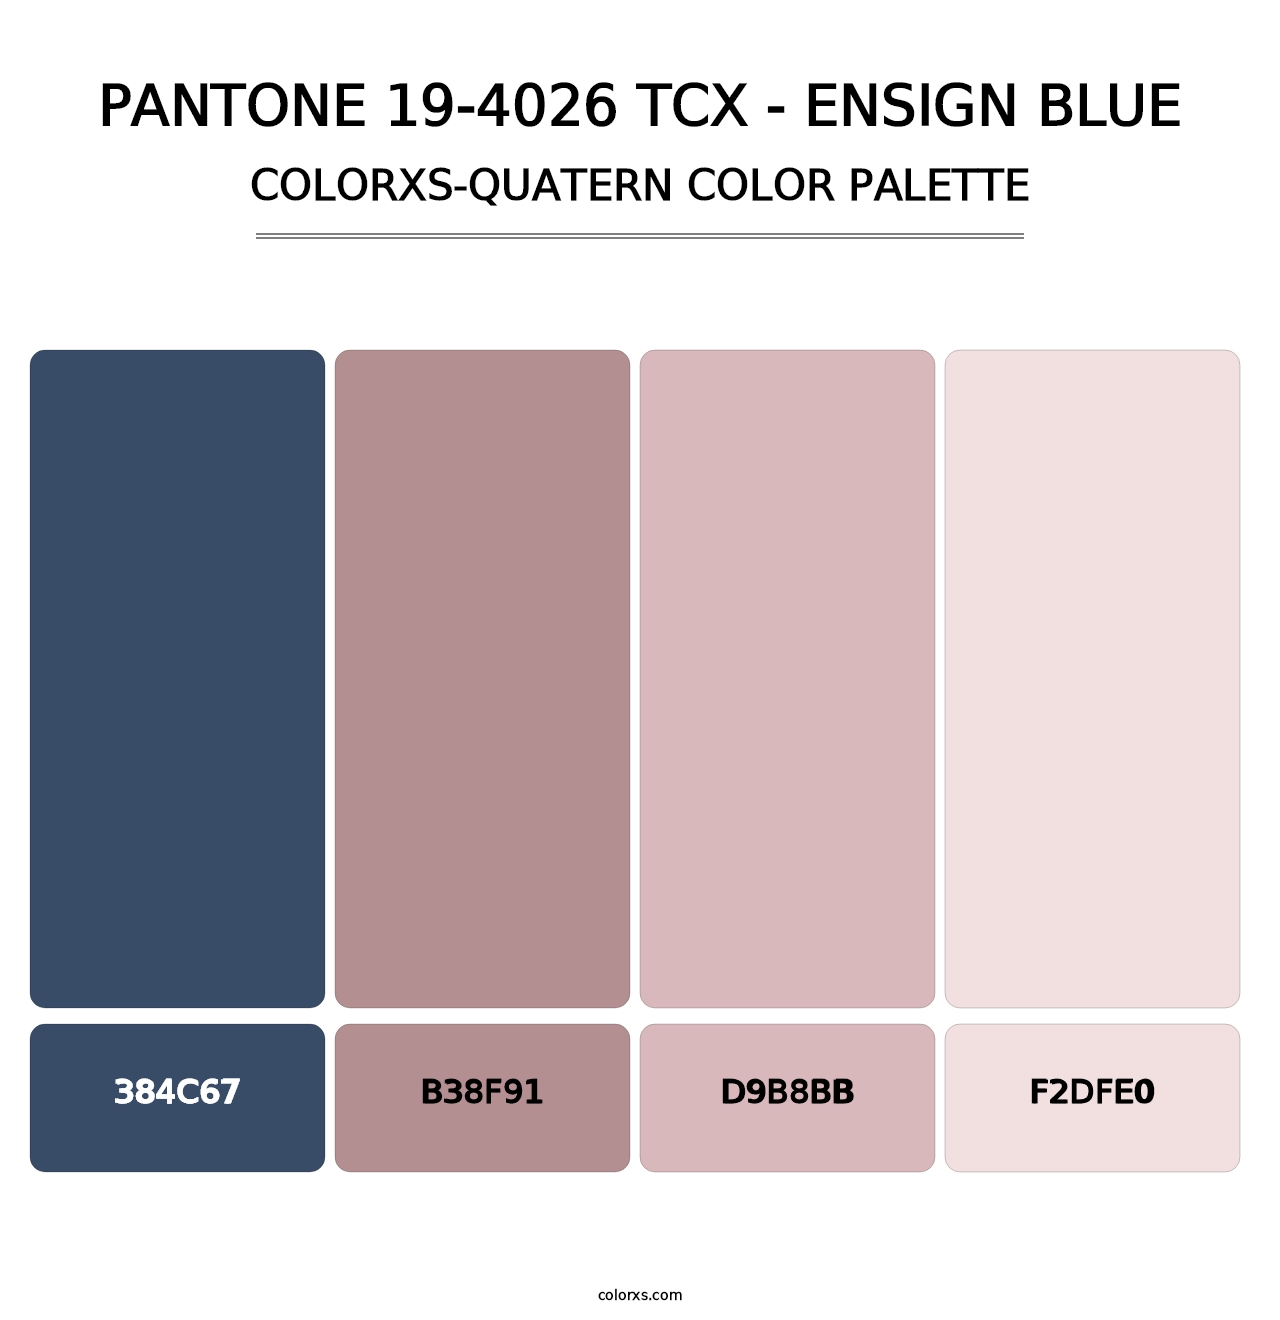 PANTONE 19-4026 TCX - Ensign Blue - Colorxs Quatern Palette